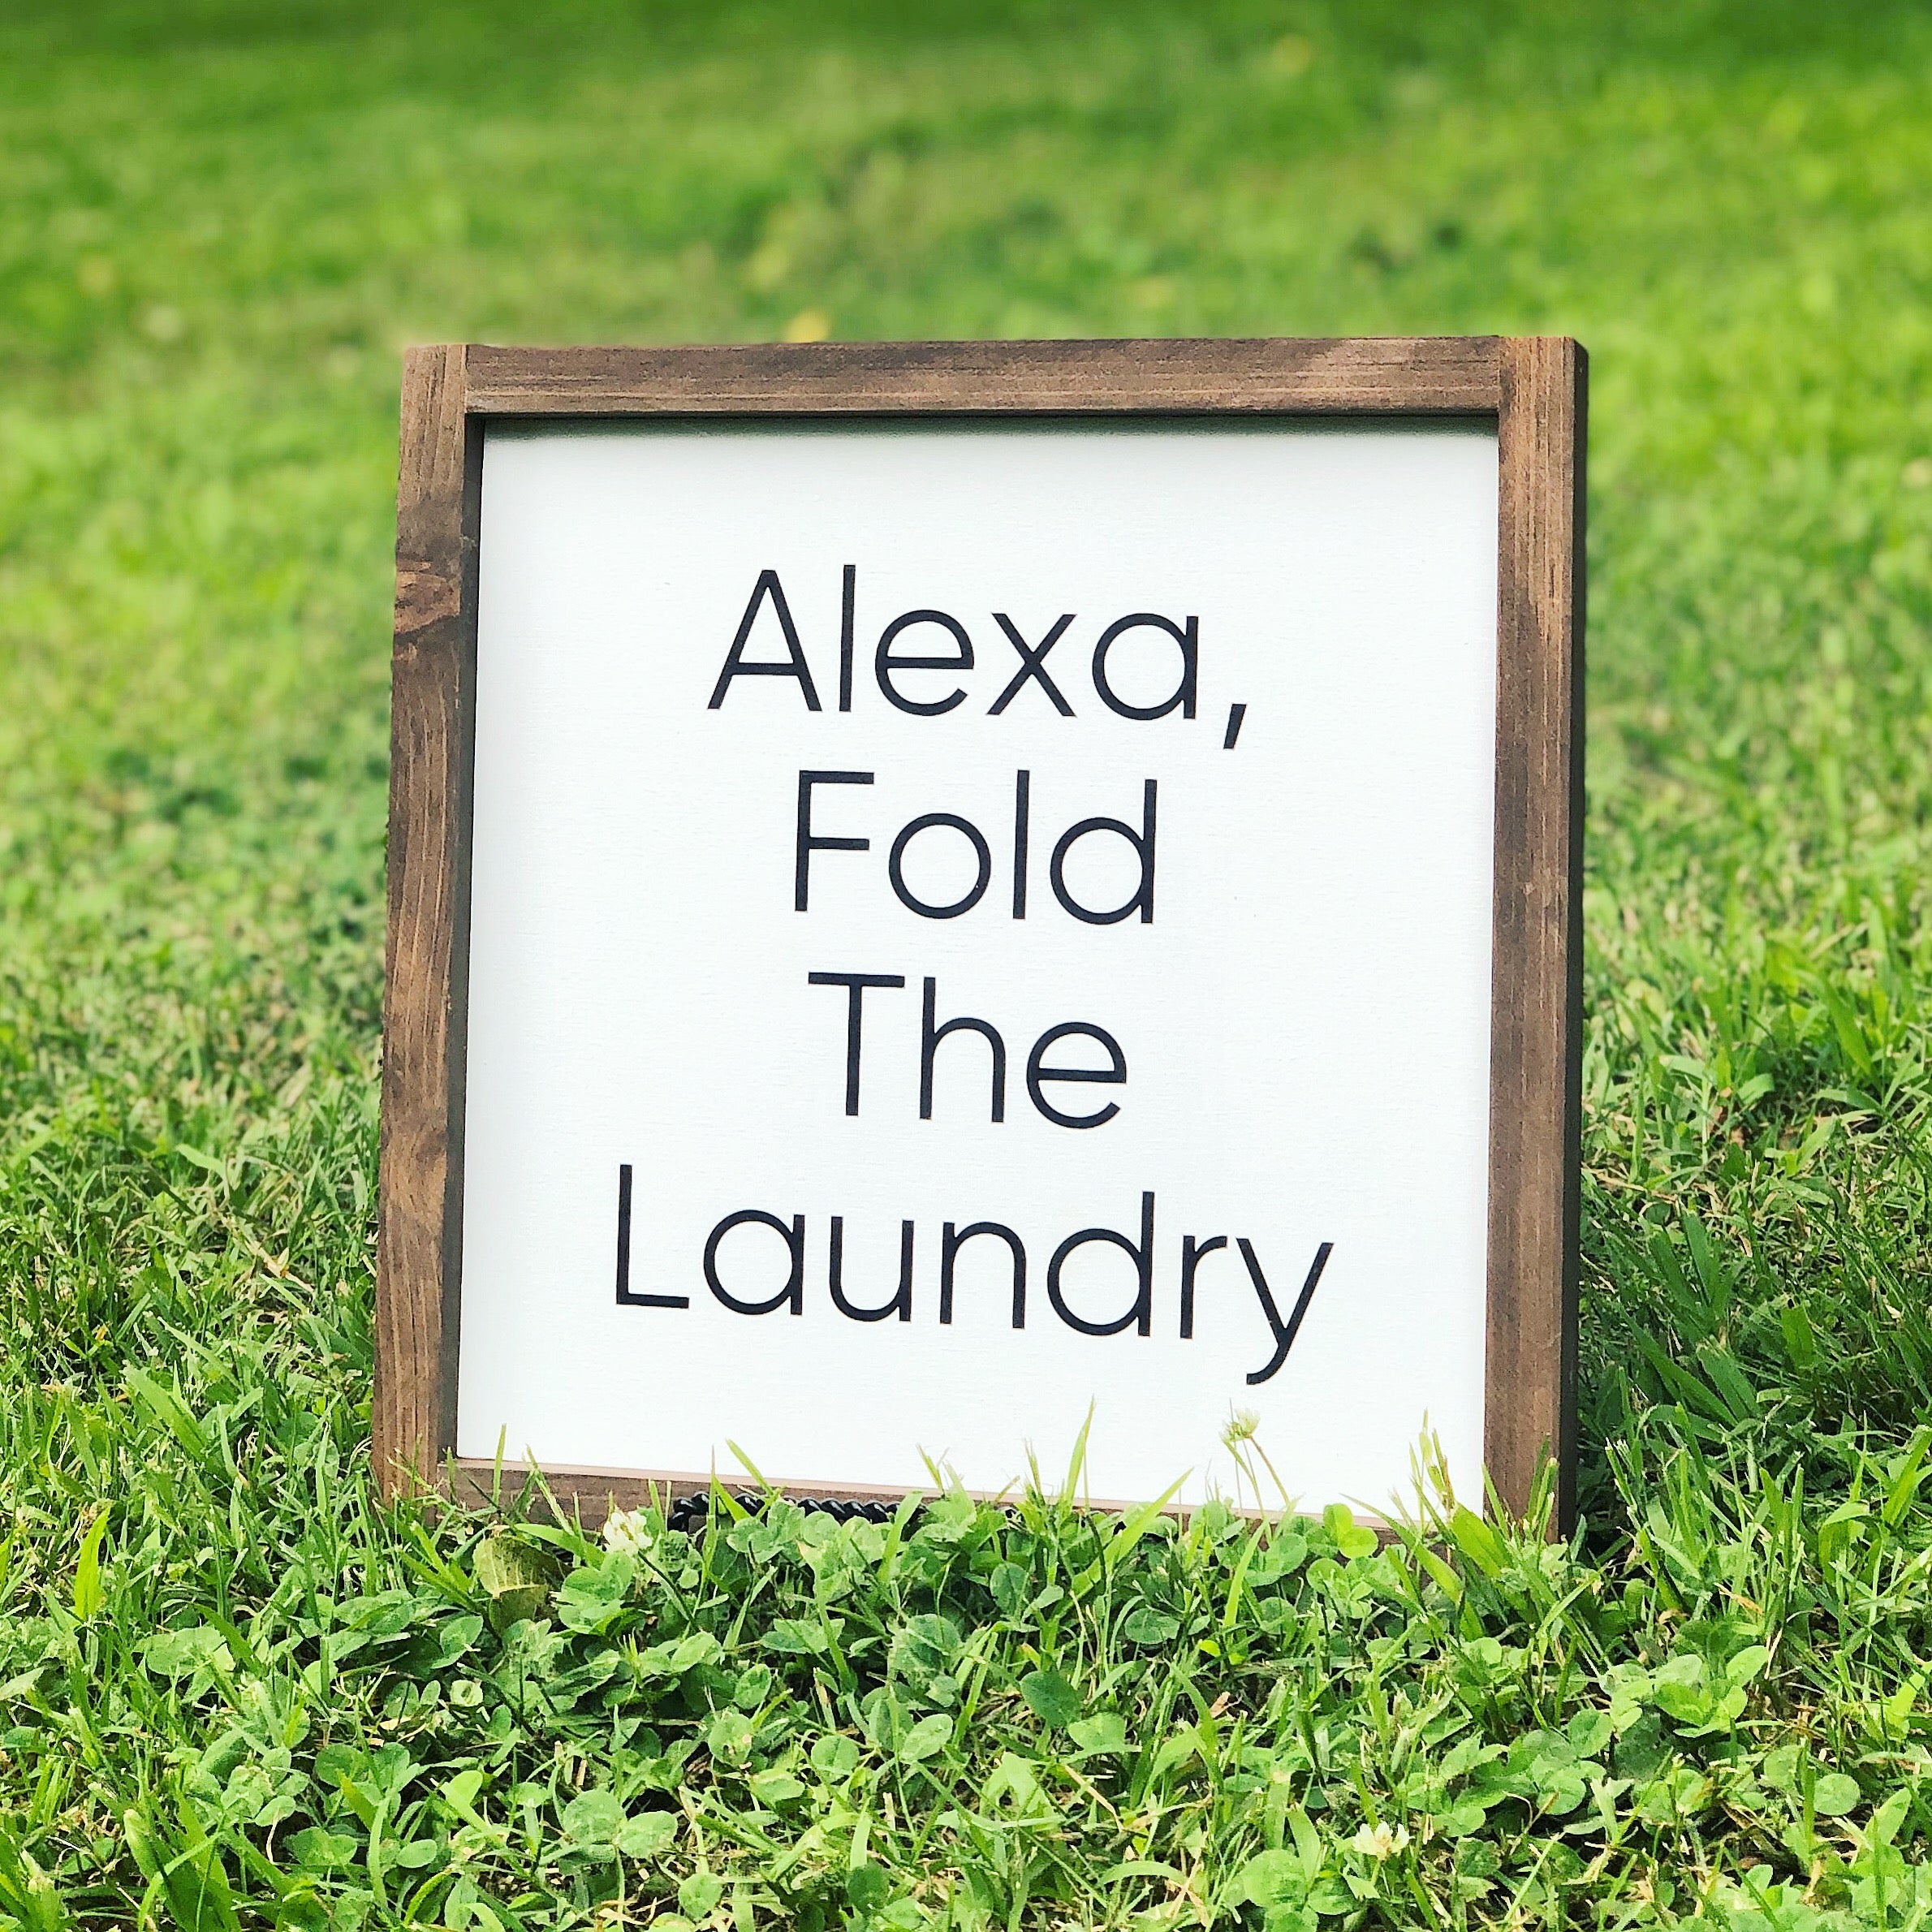 Alexa Fold The Laundry